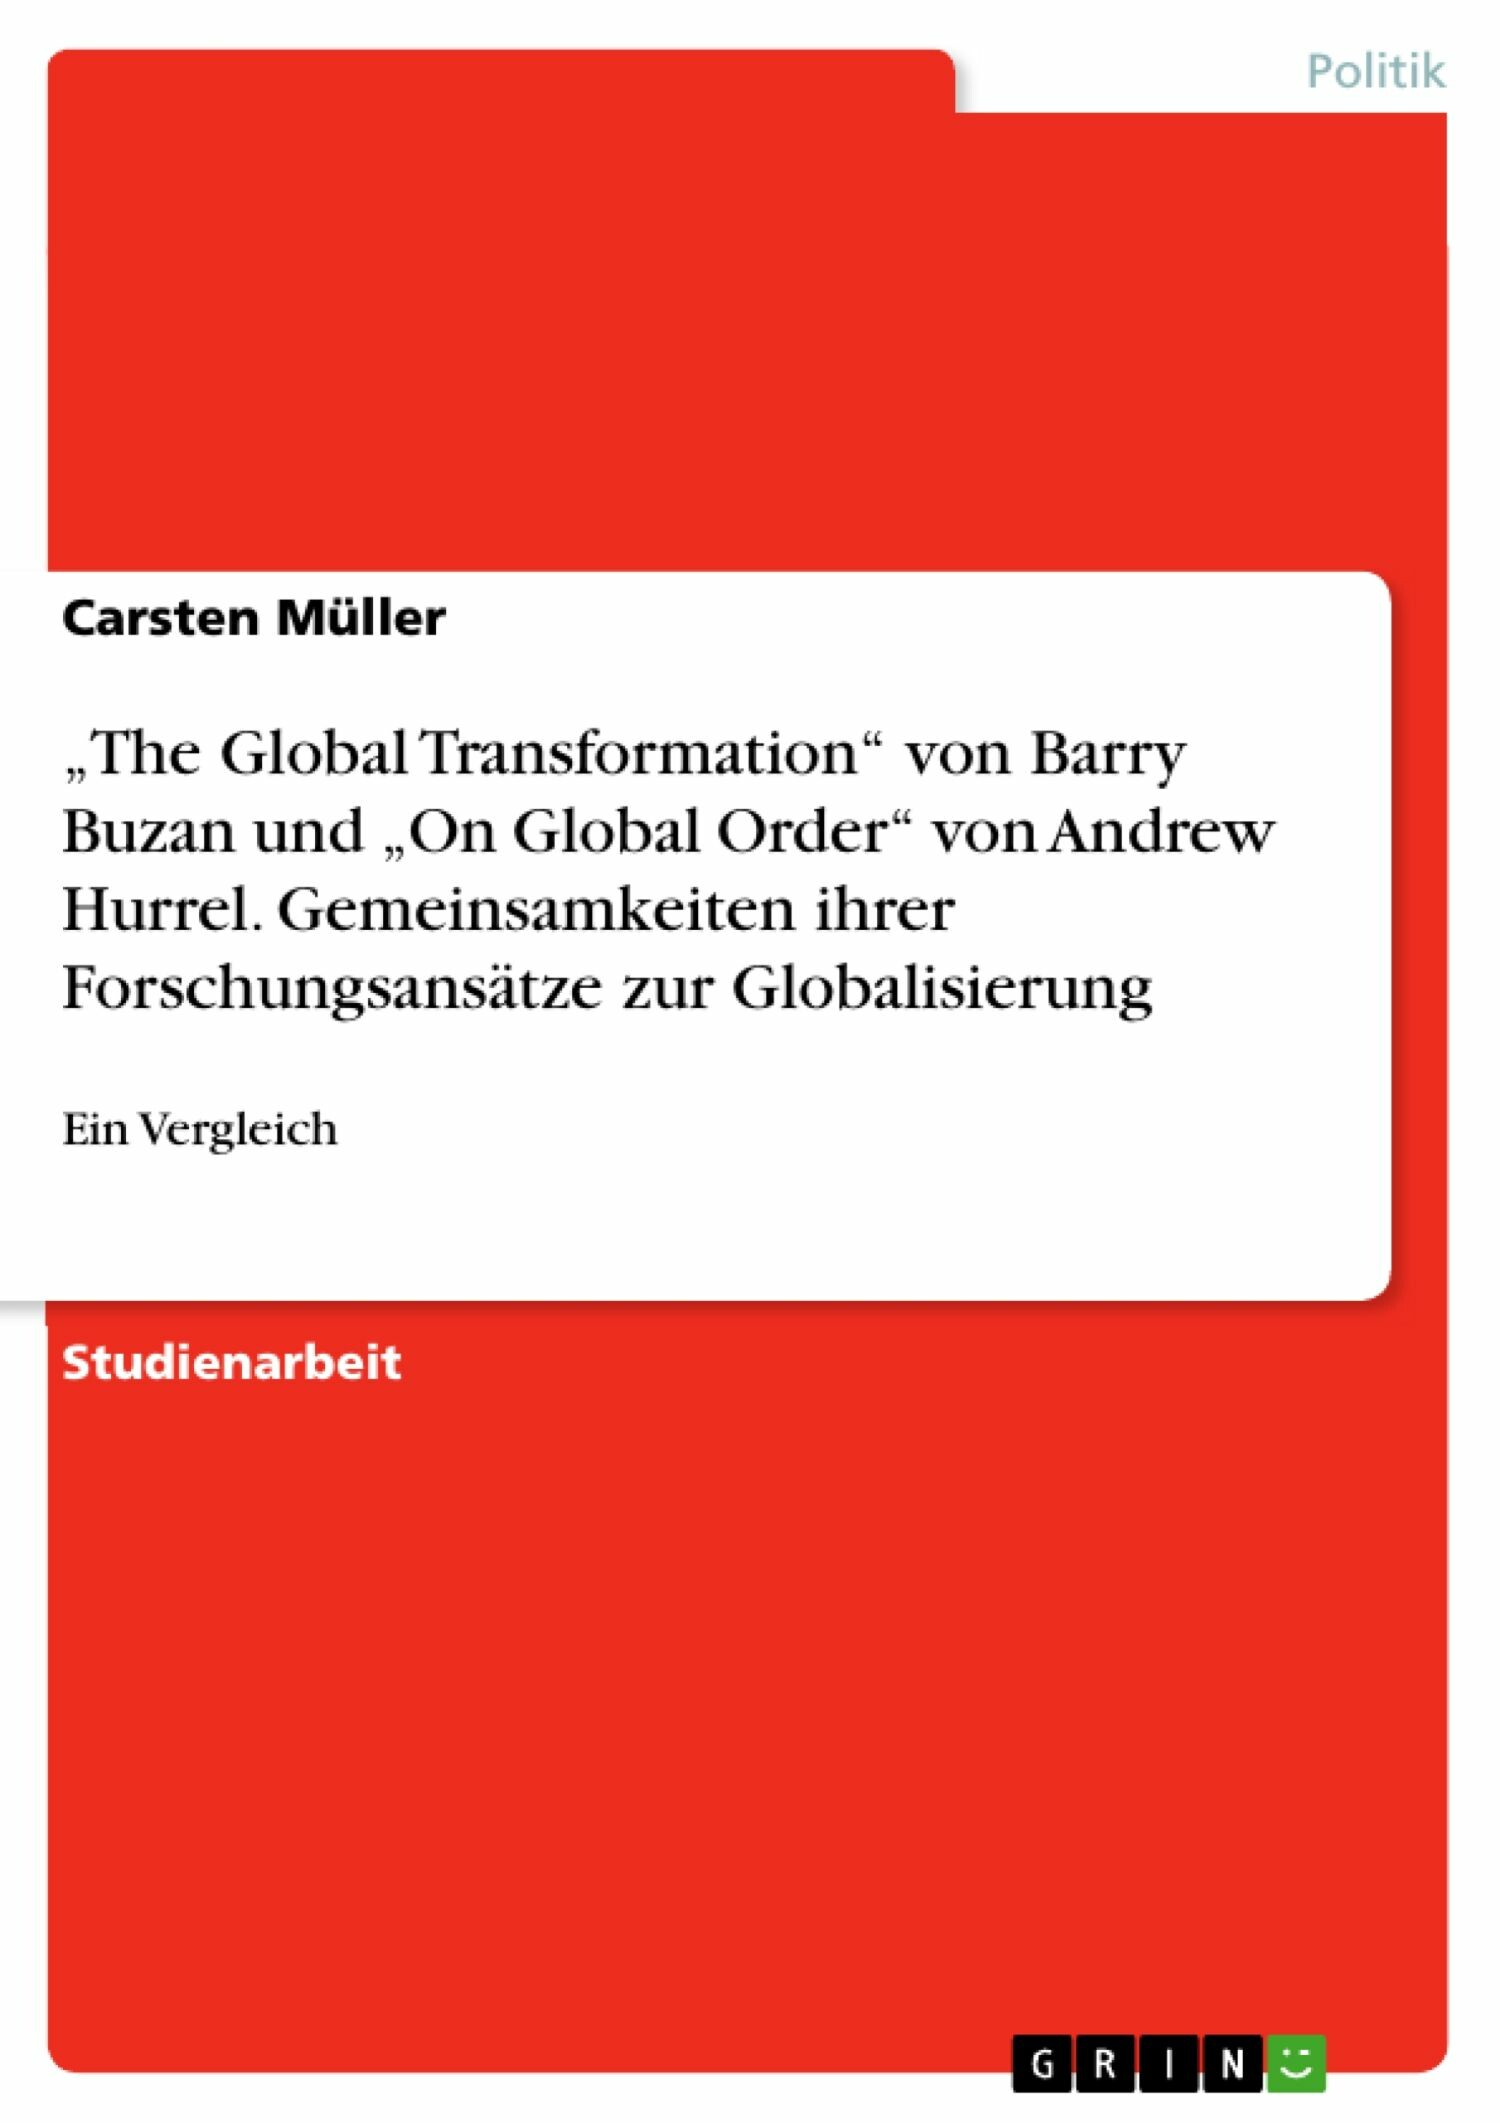 'The Global Transformation' von Barry Buzan und 'On Global Order' von Andrew Hurrel. Gemeinsamkeiten ihrer Forschungsansätze zur Globalisierung